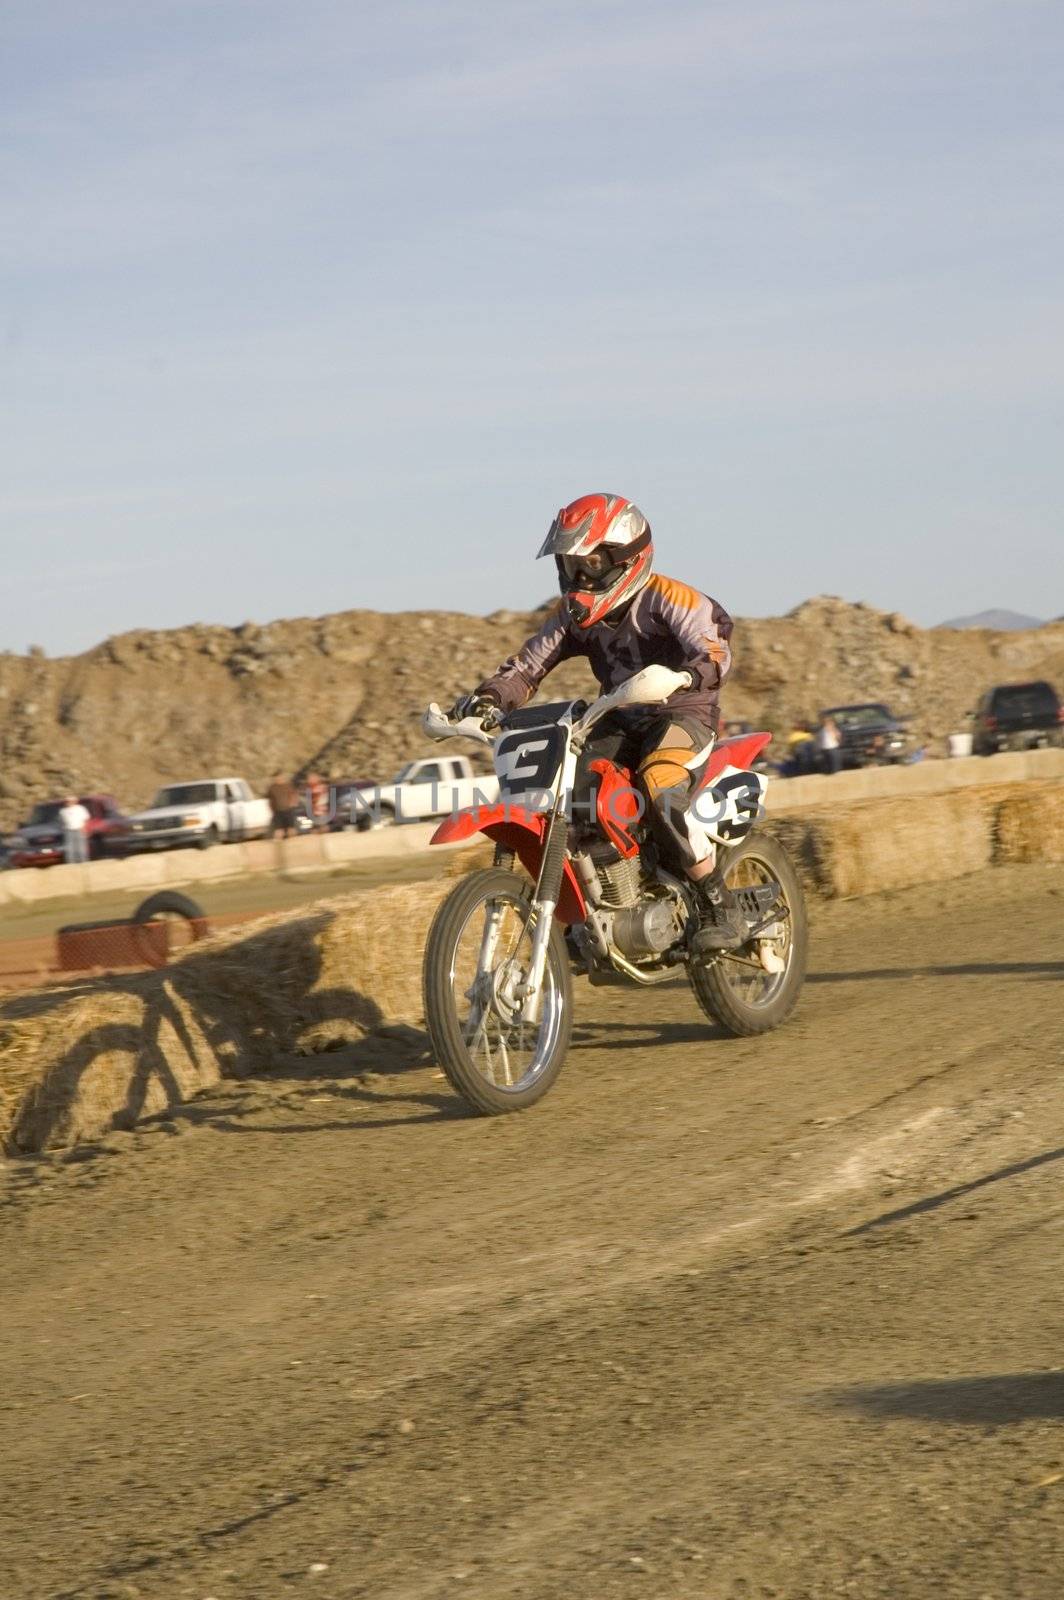 Dirt bike racer in race